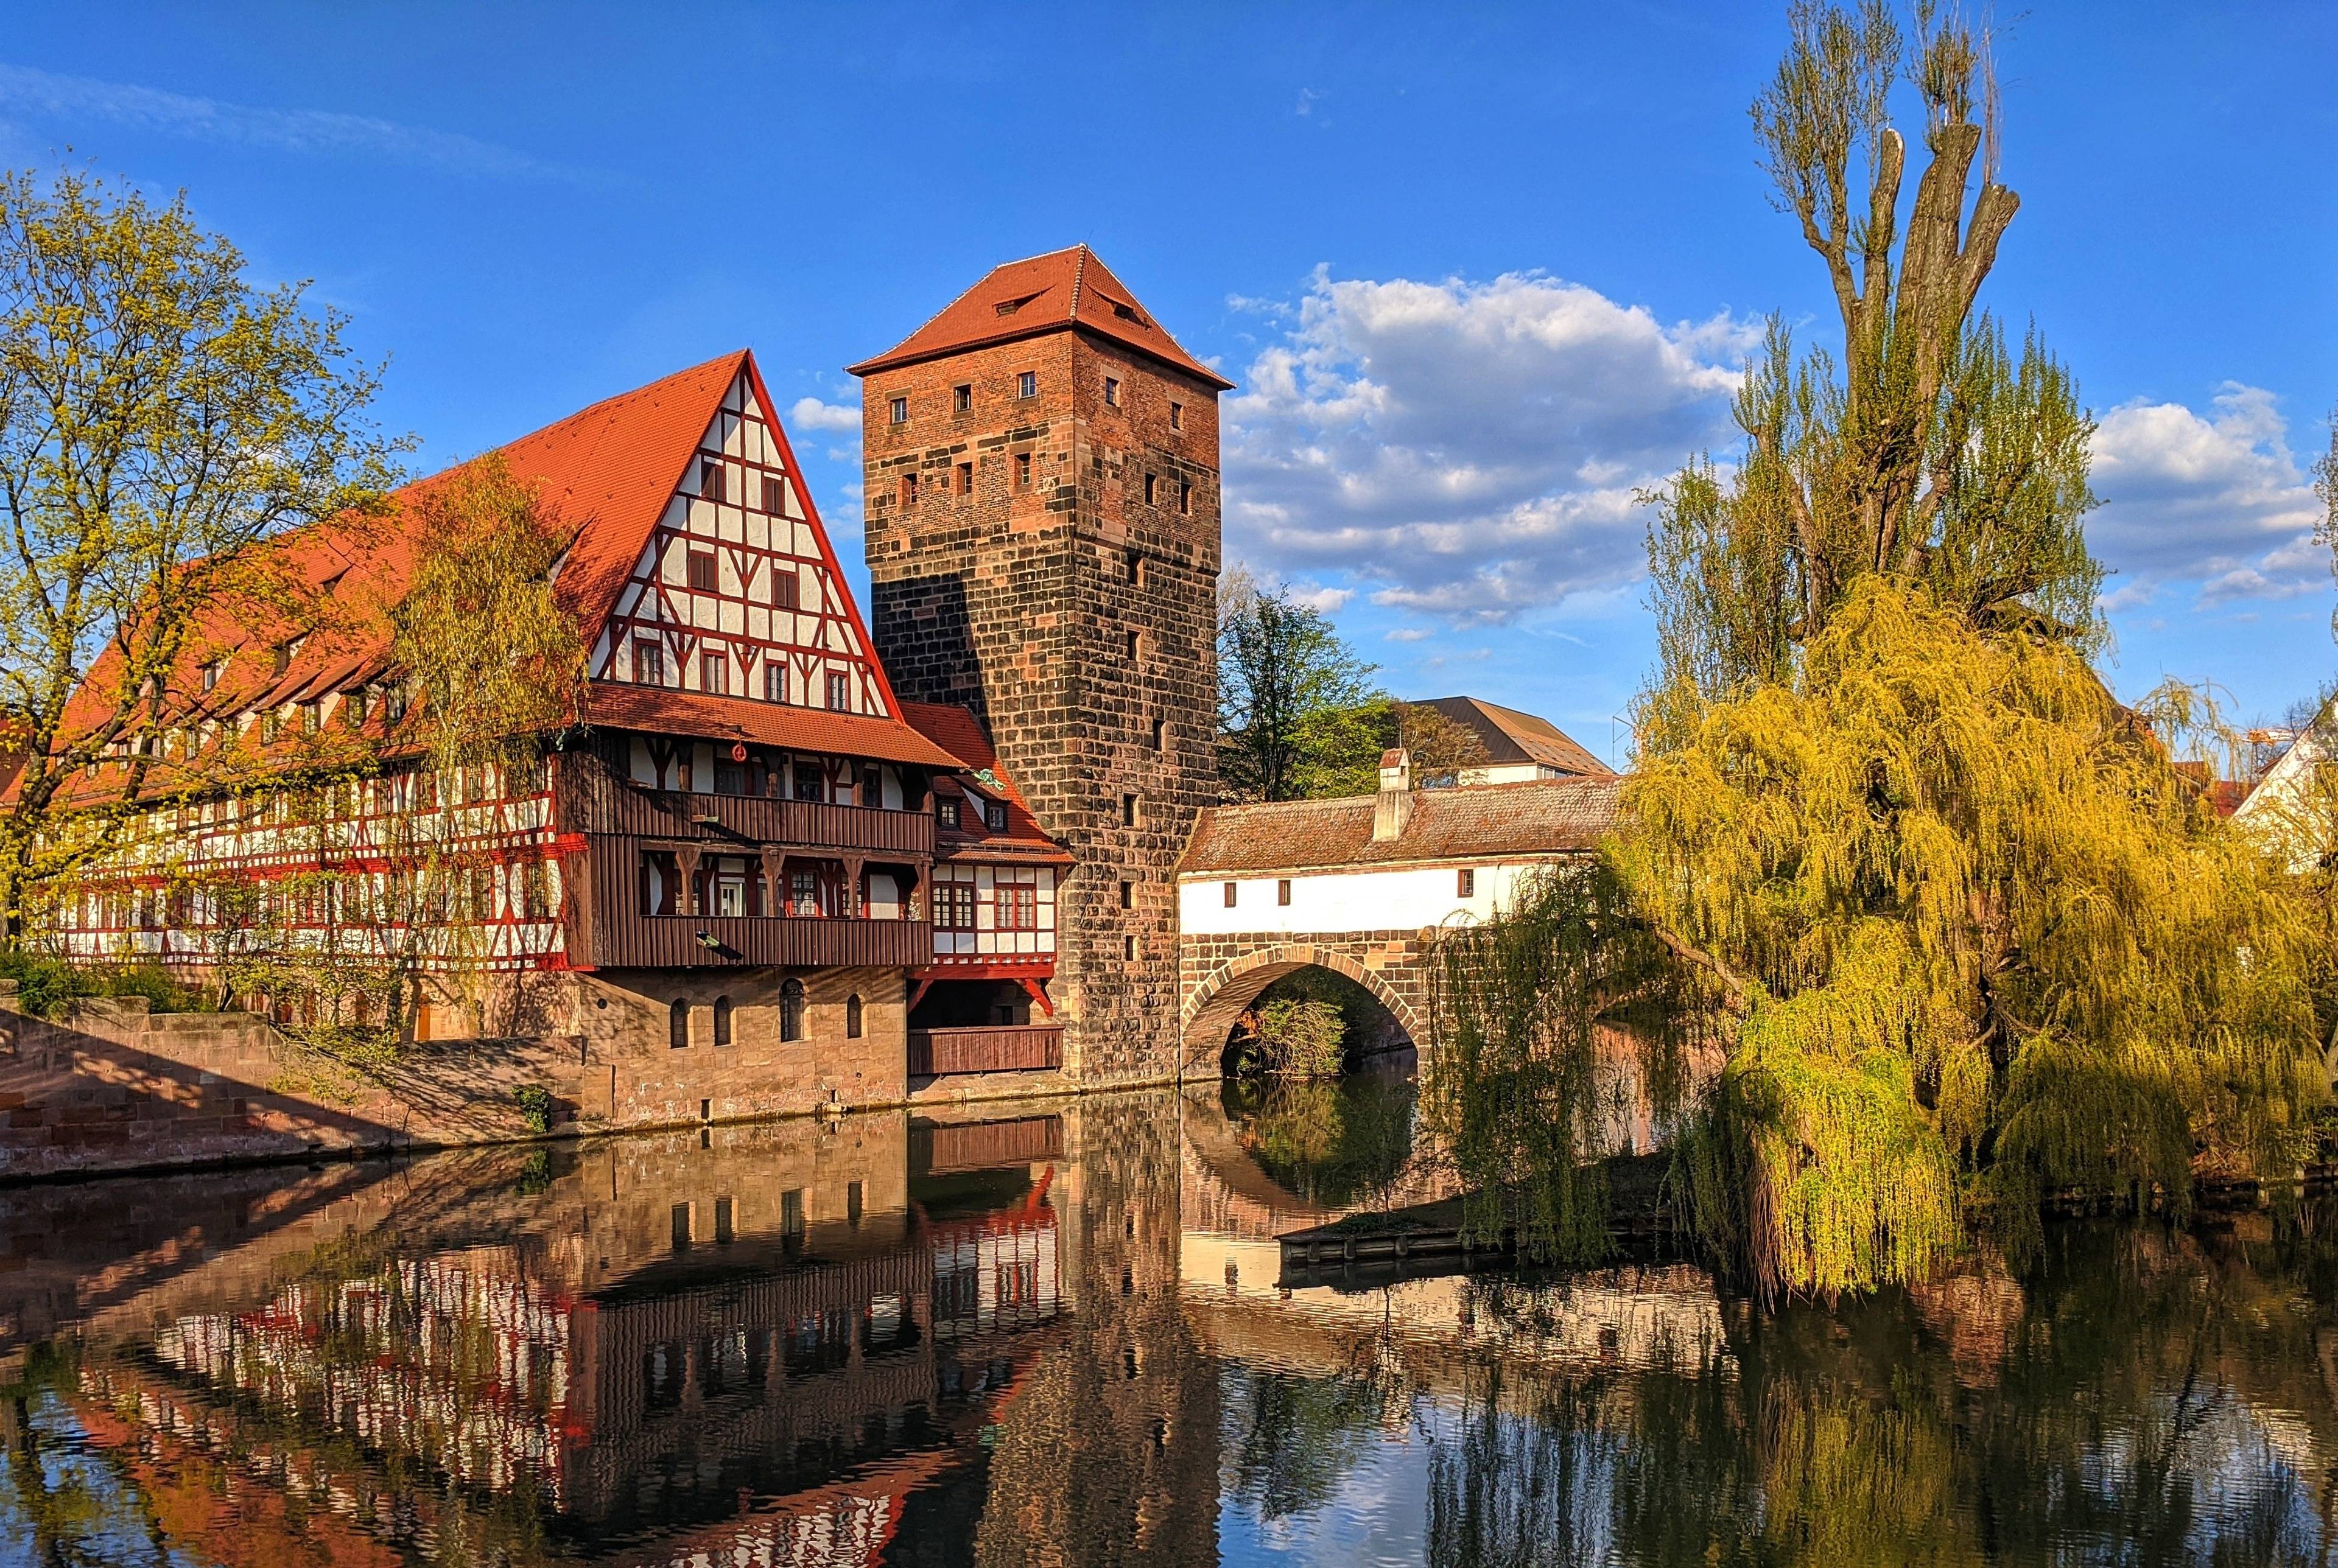 Una gita di un giorno alla scoperta del bellissimo centro storico medievale di Norimberga